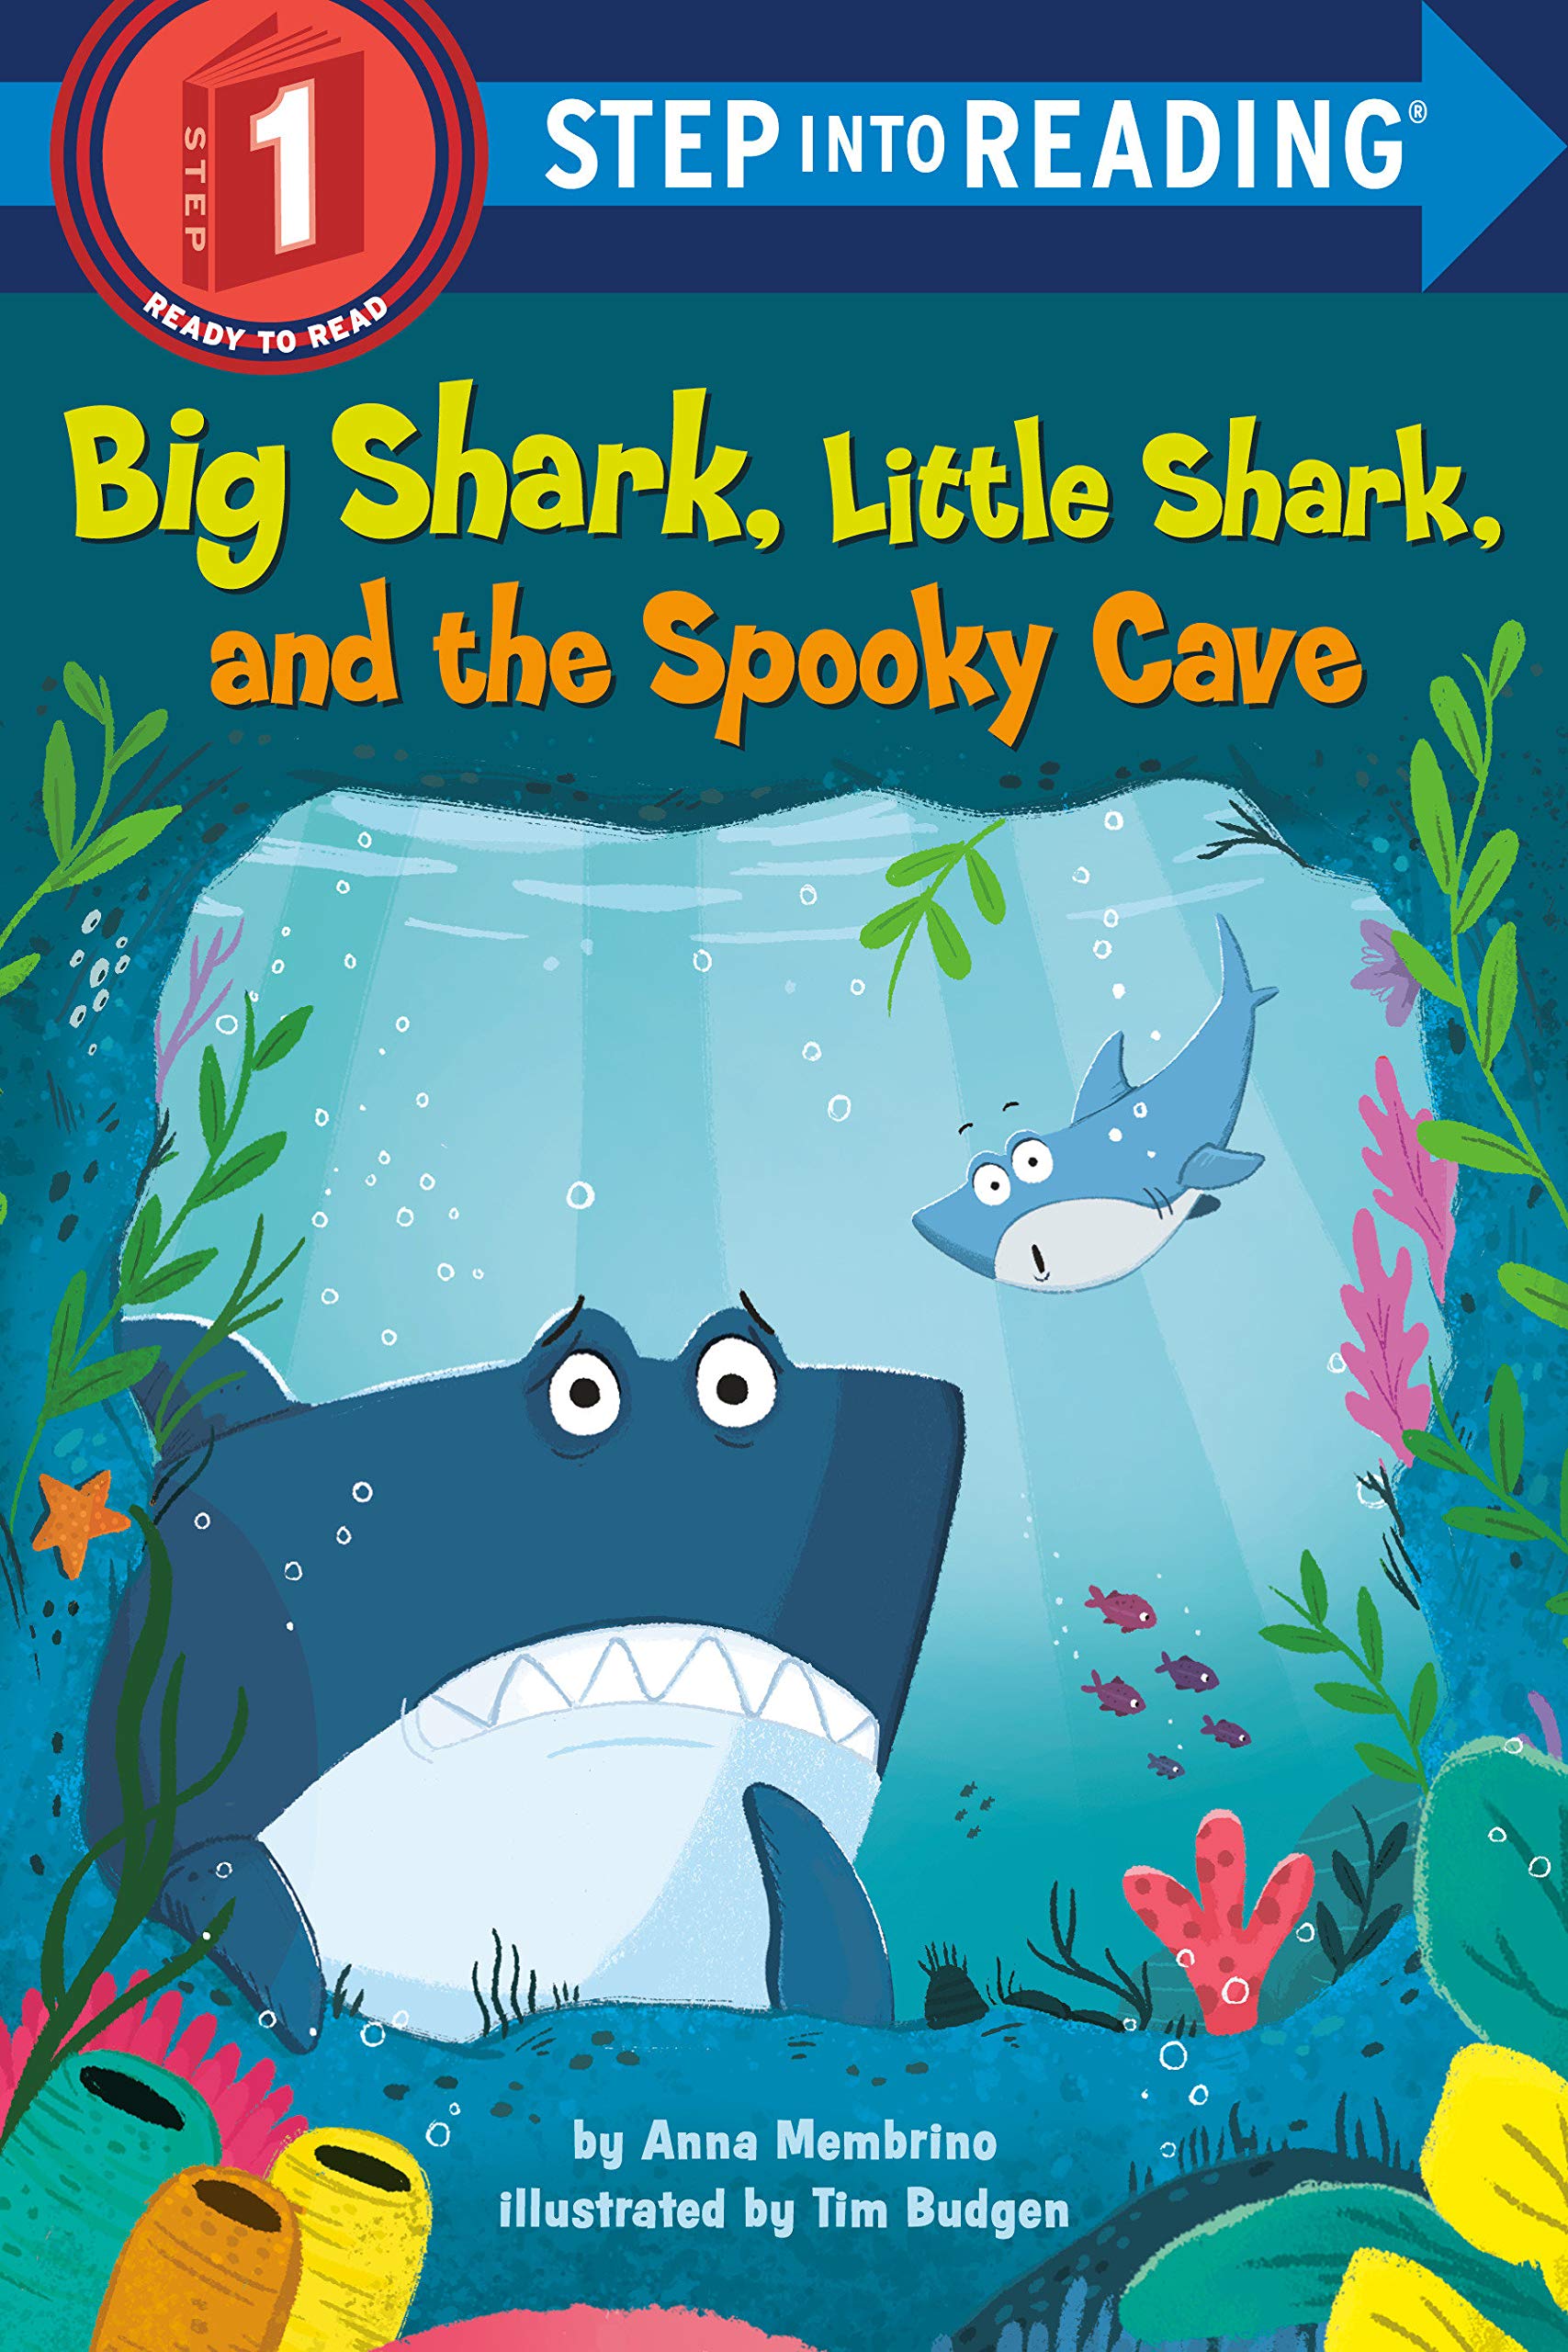 SIR(Step1):Big Shark, Little Shark, and the Spooky Cave